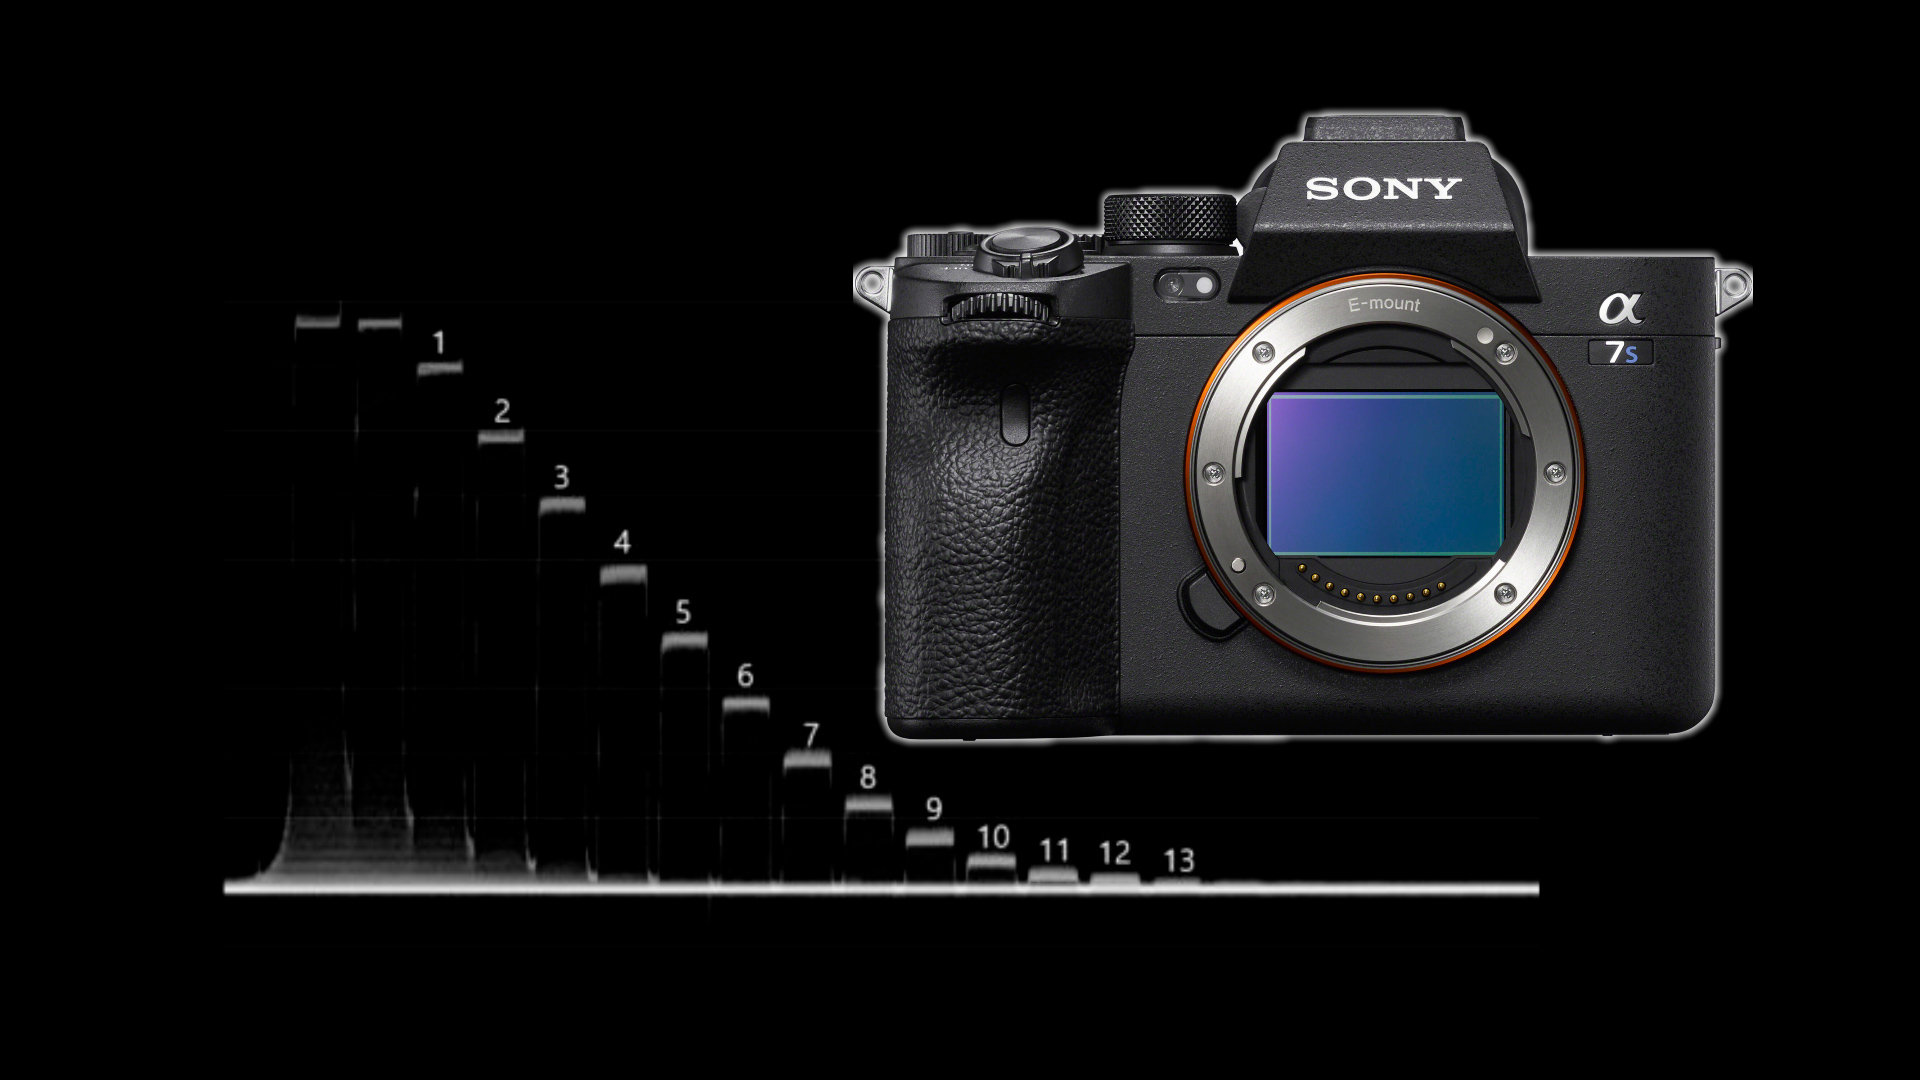 Sony Alpha 7S III Full Frame with pro movie/still capability